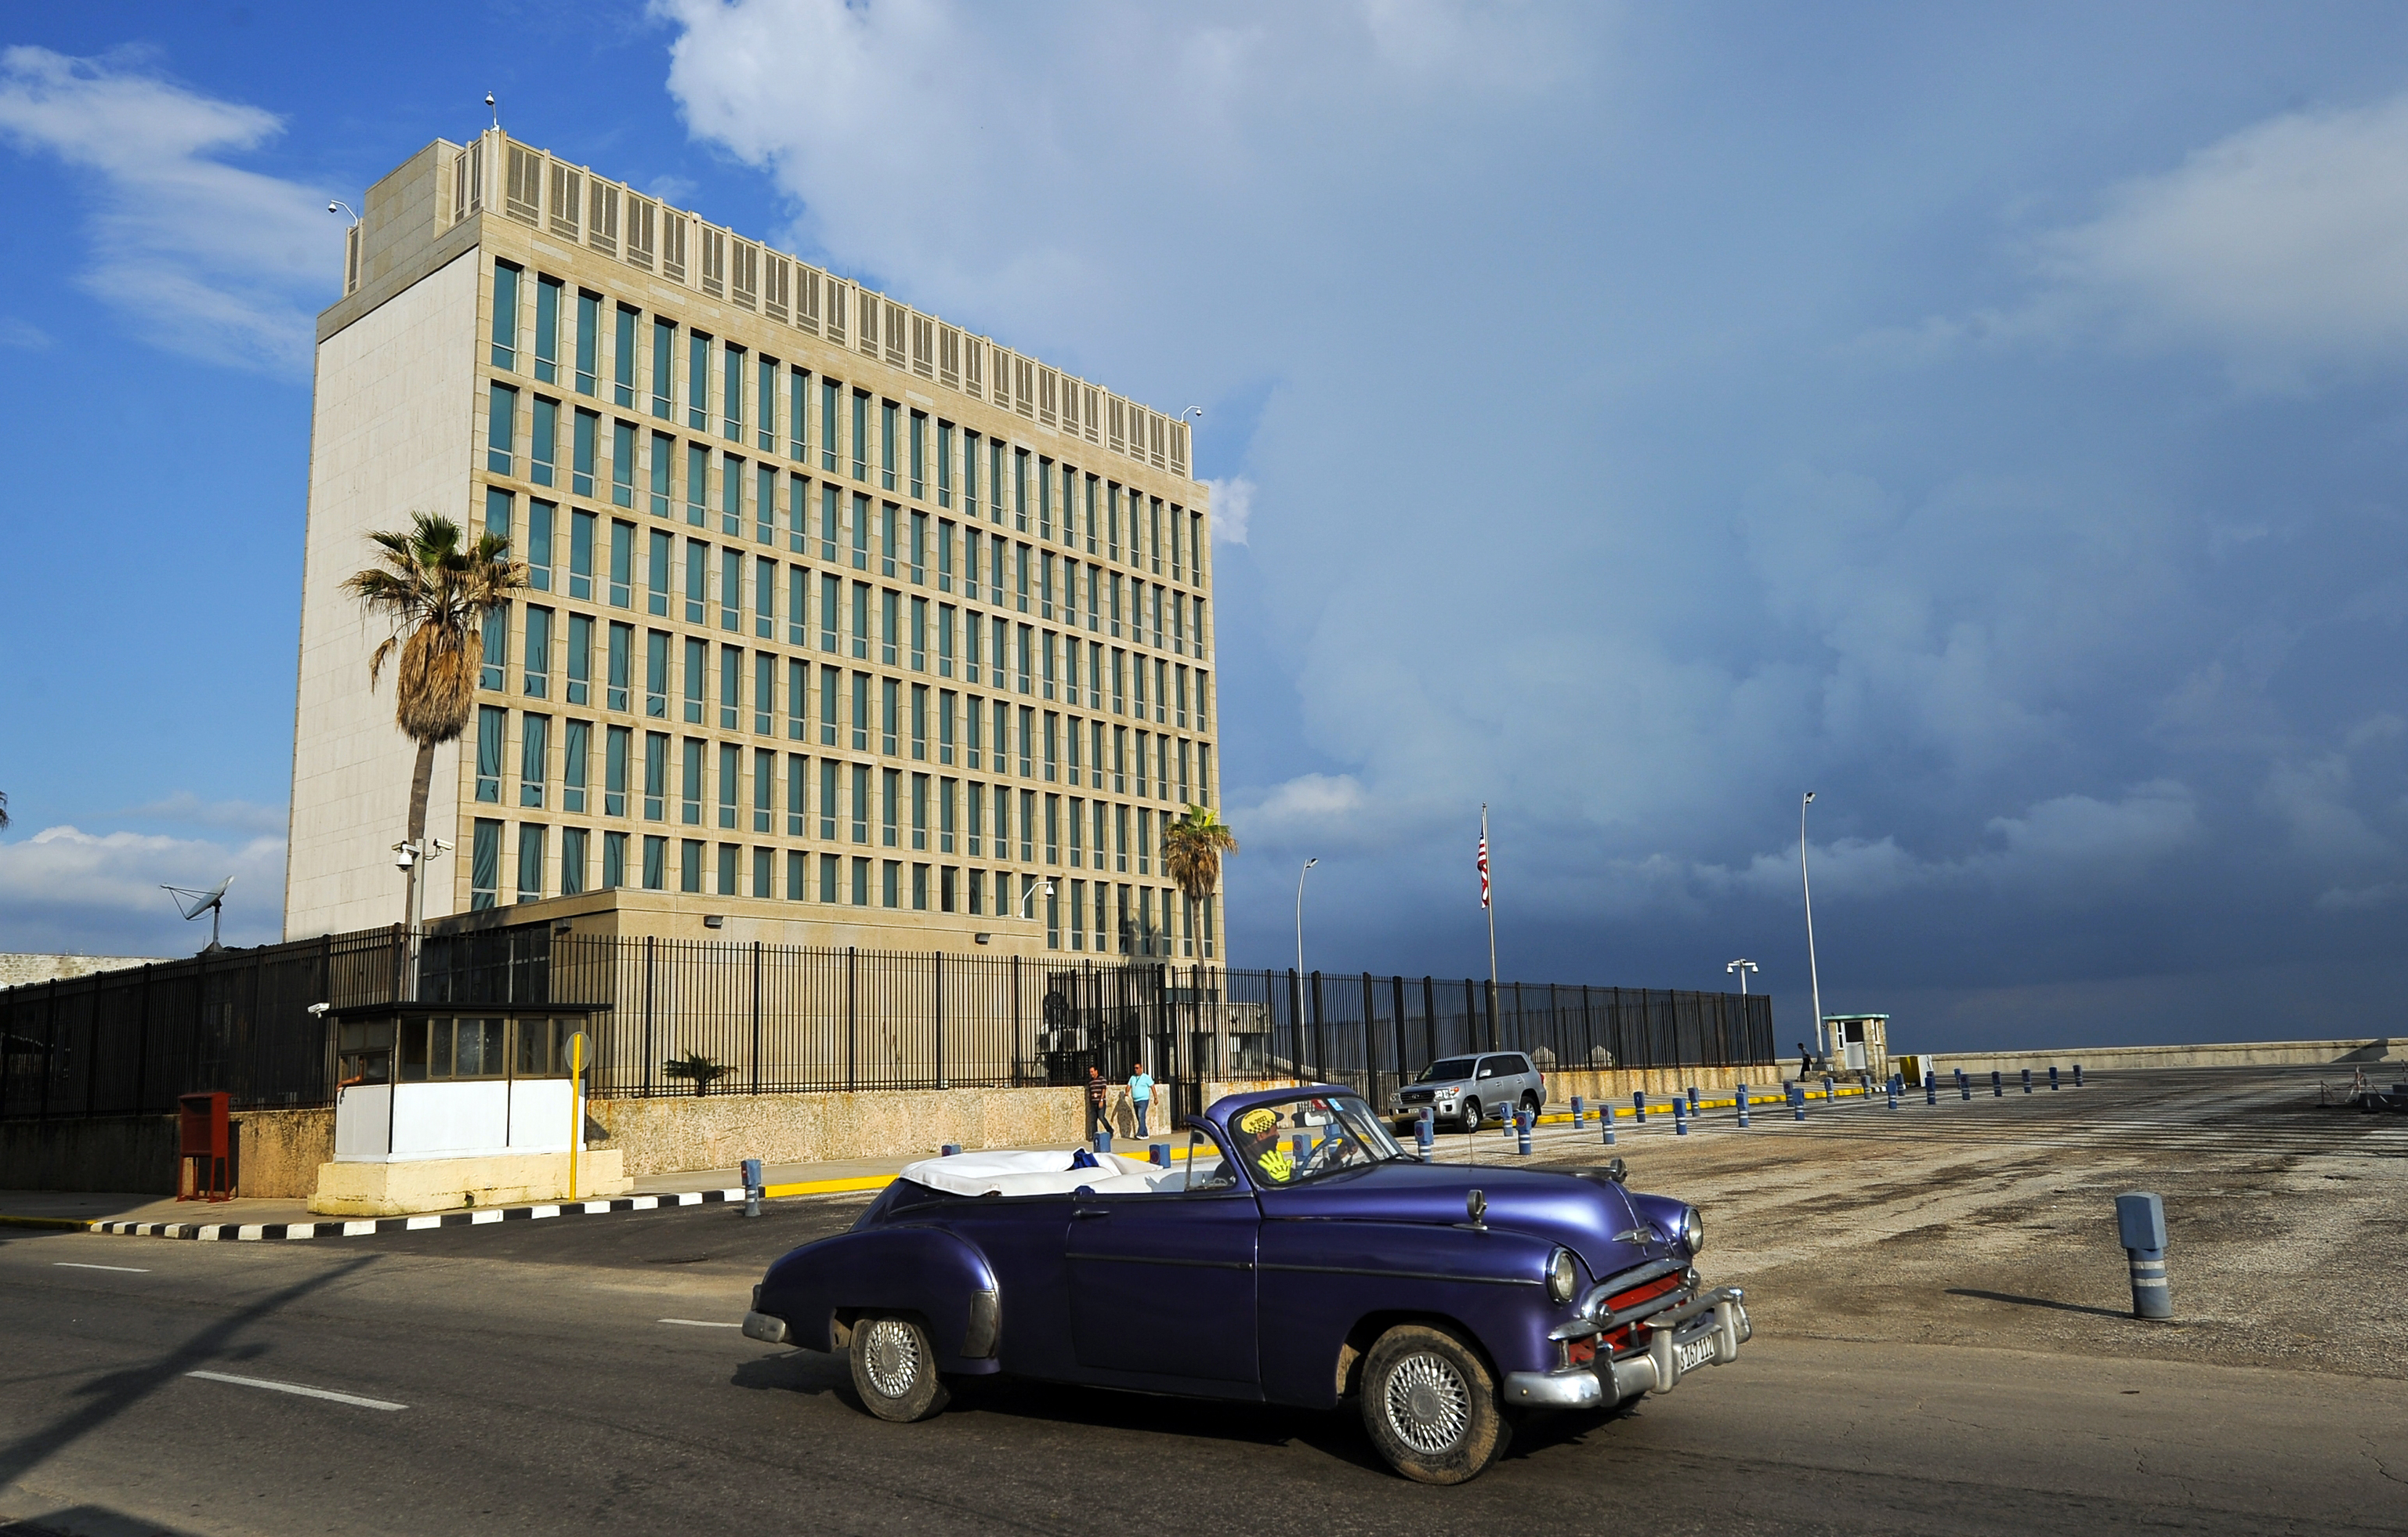 Bizonyos esetekben mégiscsak az energianyaláb tűnik a legvalószínűbb magyarázatnak a Havanna-szindrómára